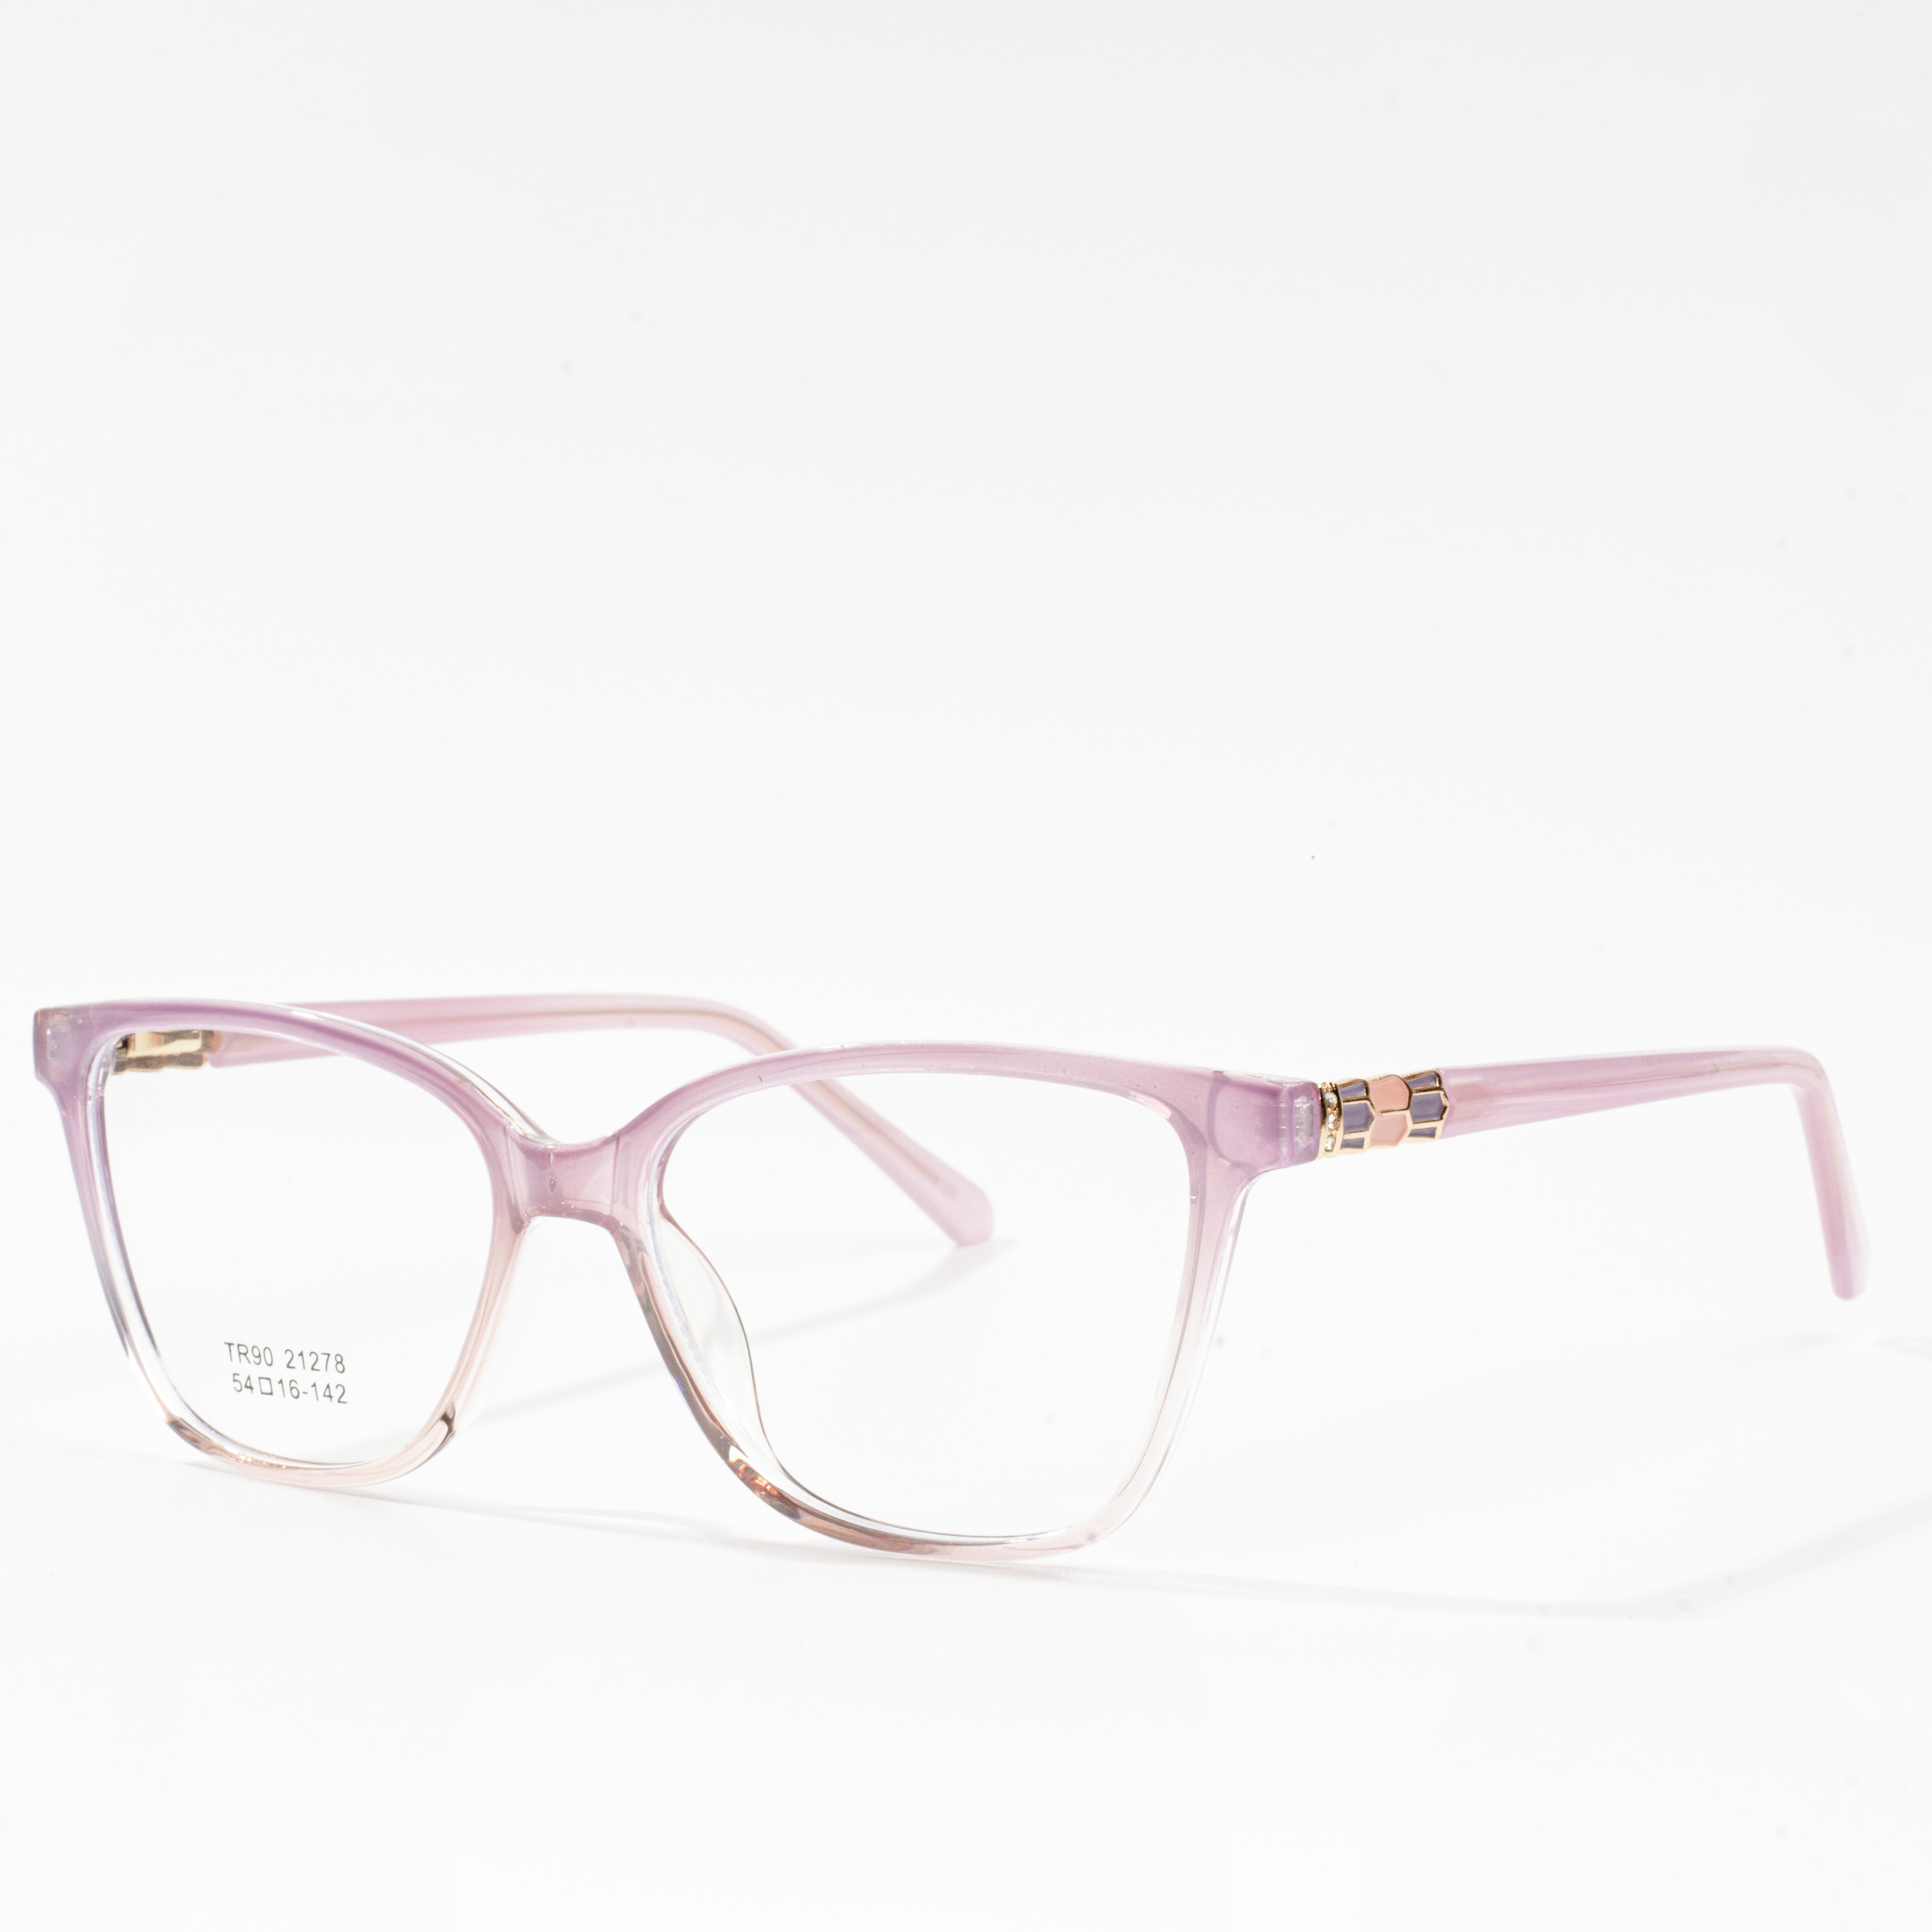 ûntwerper bril frames